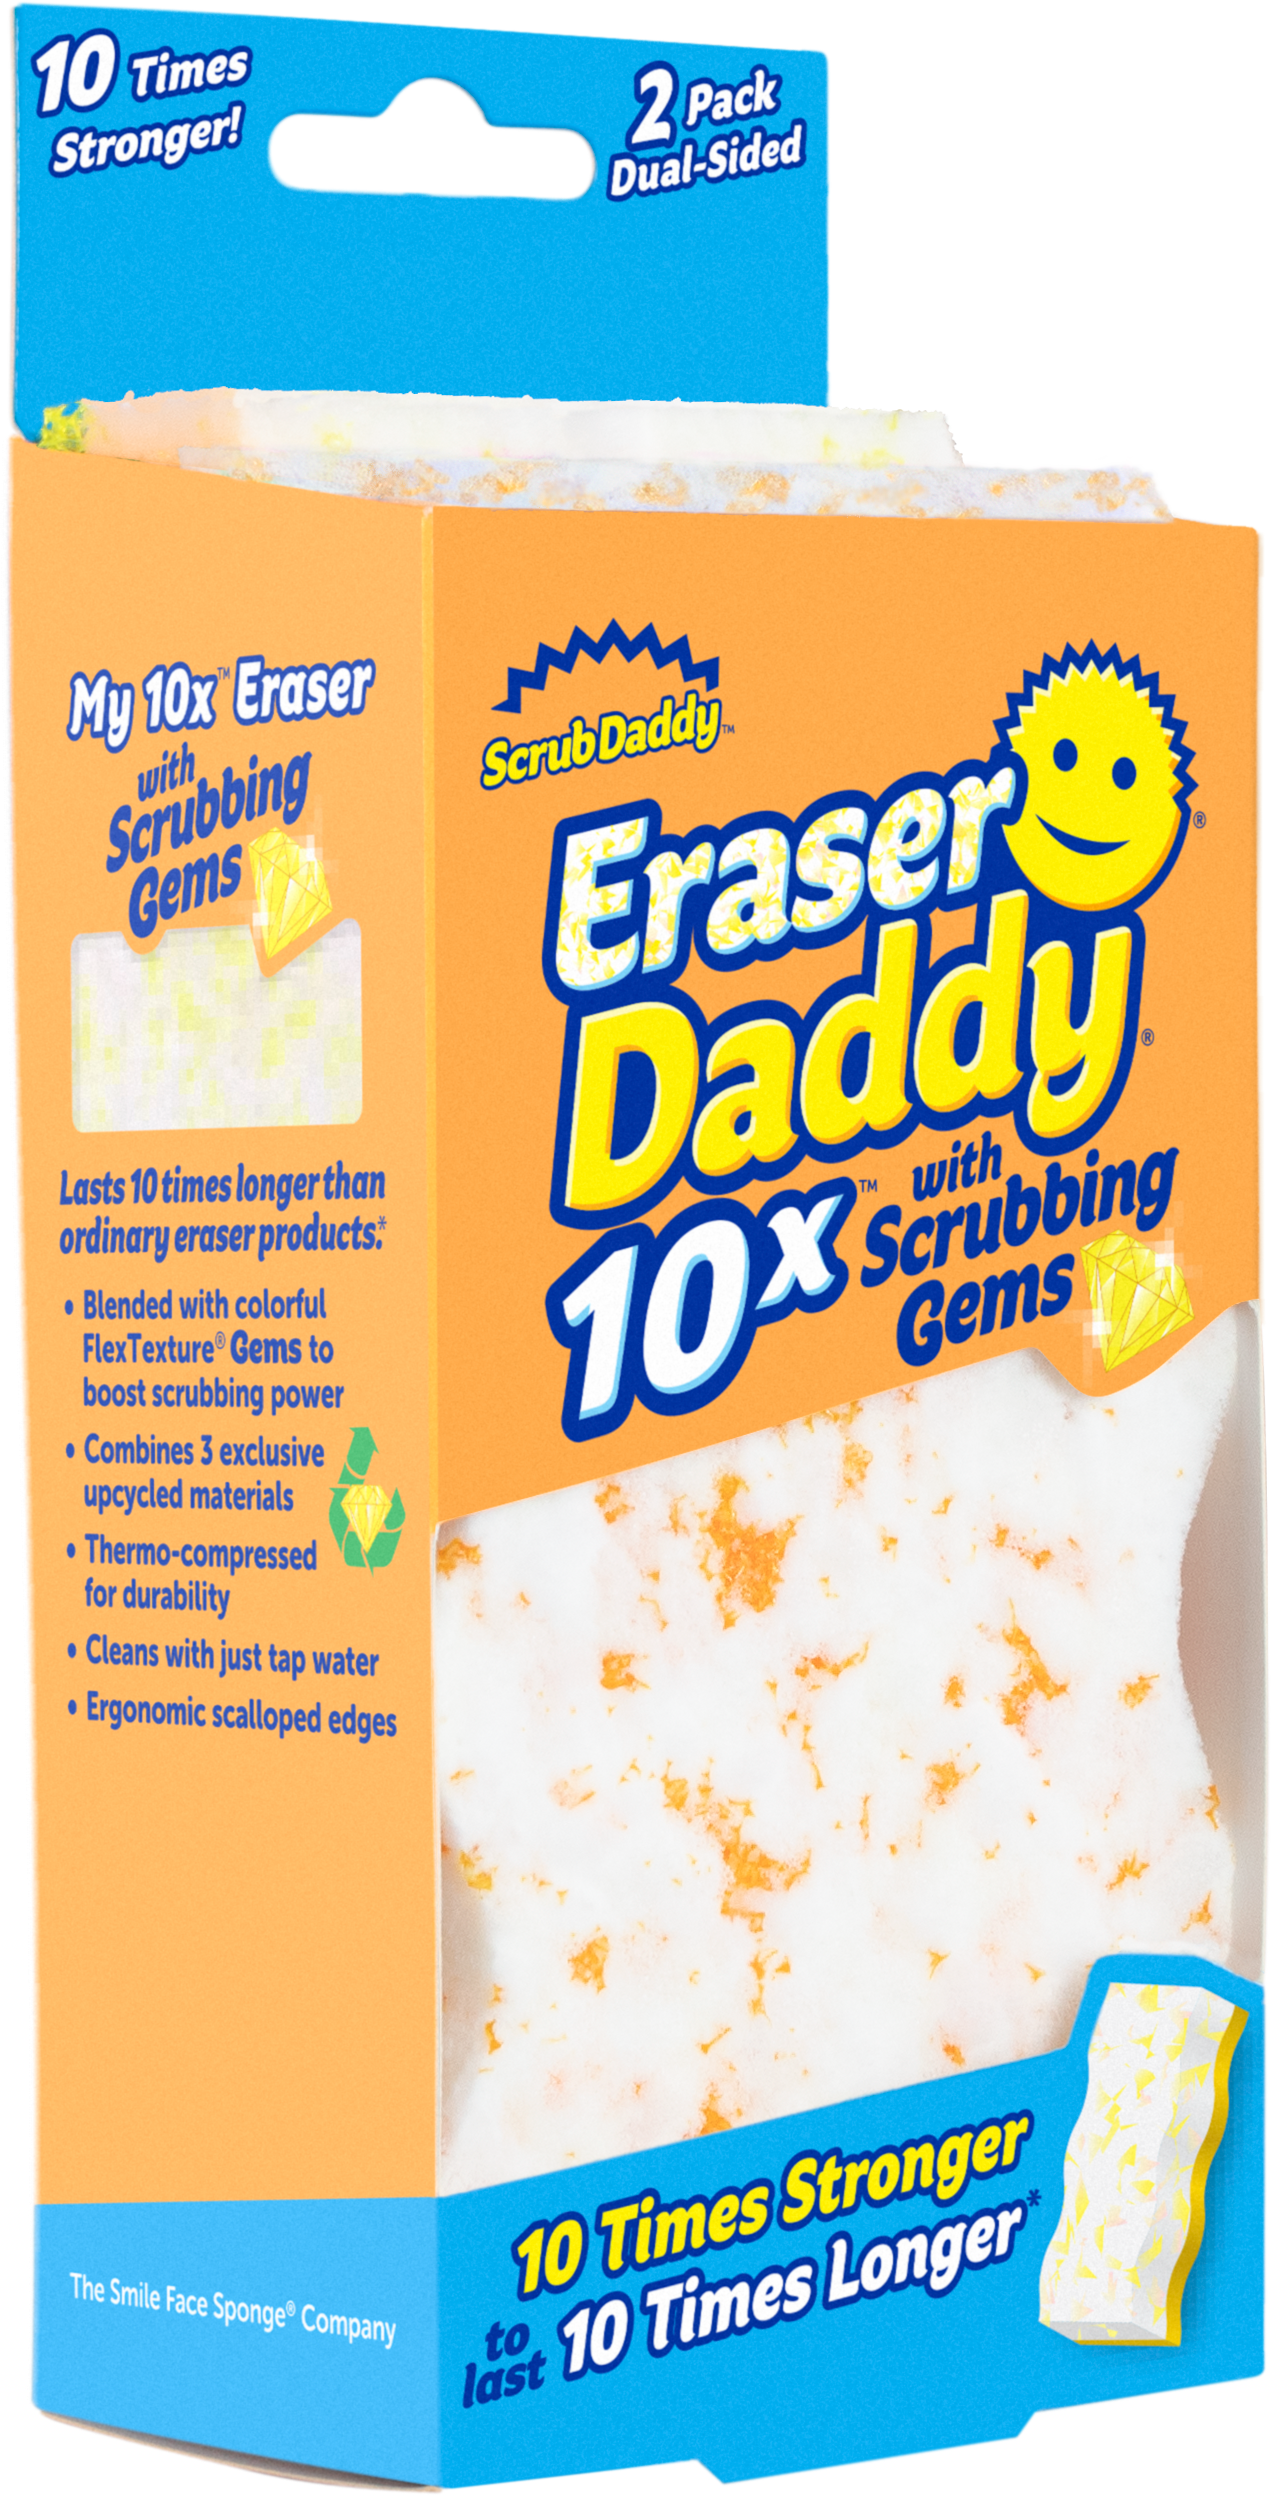 Eraser Daddy 10x